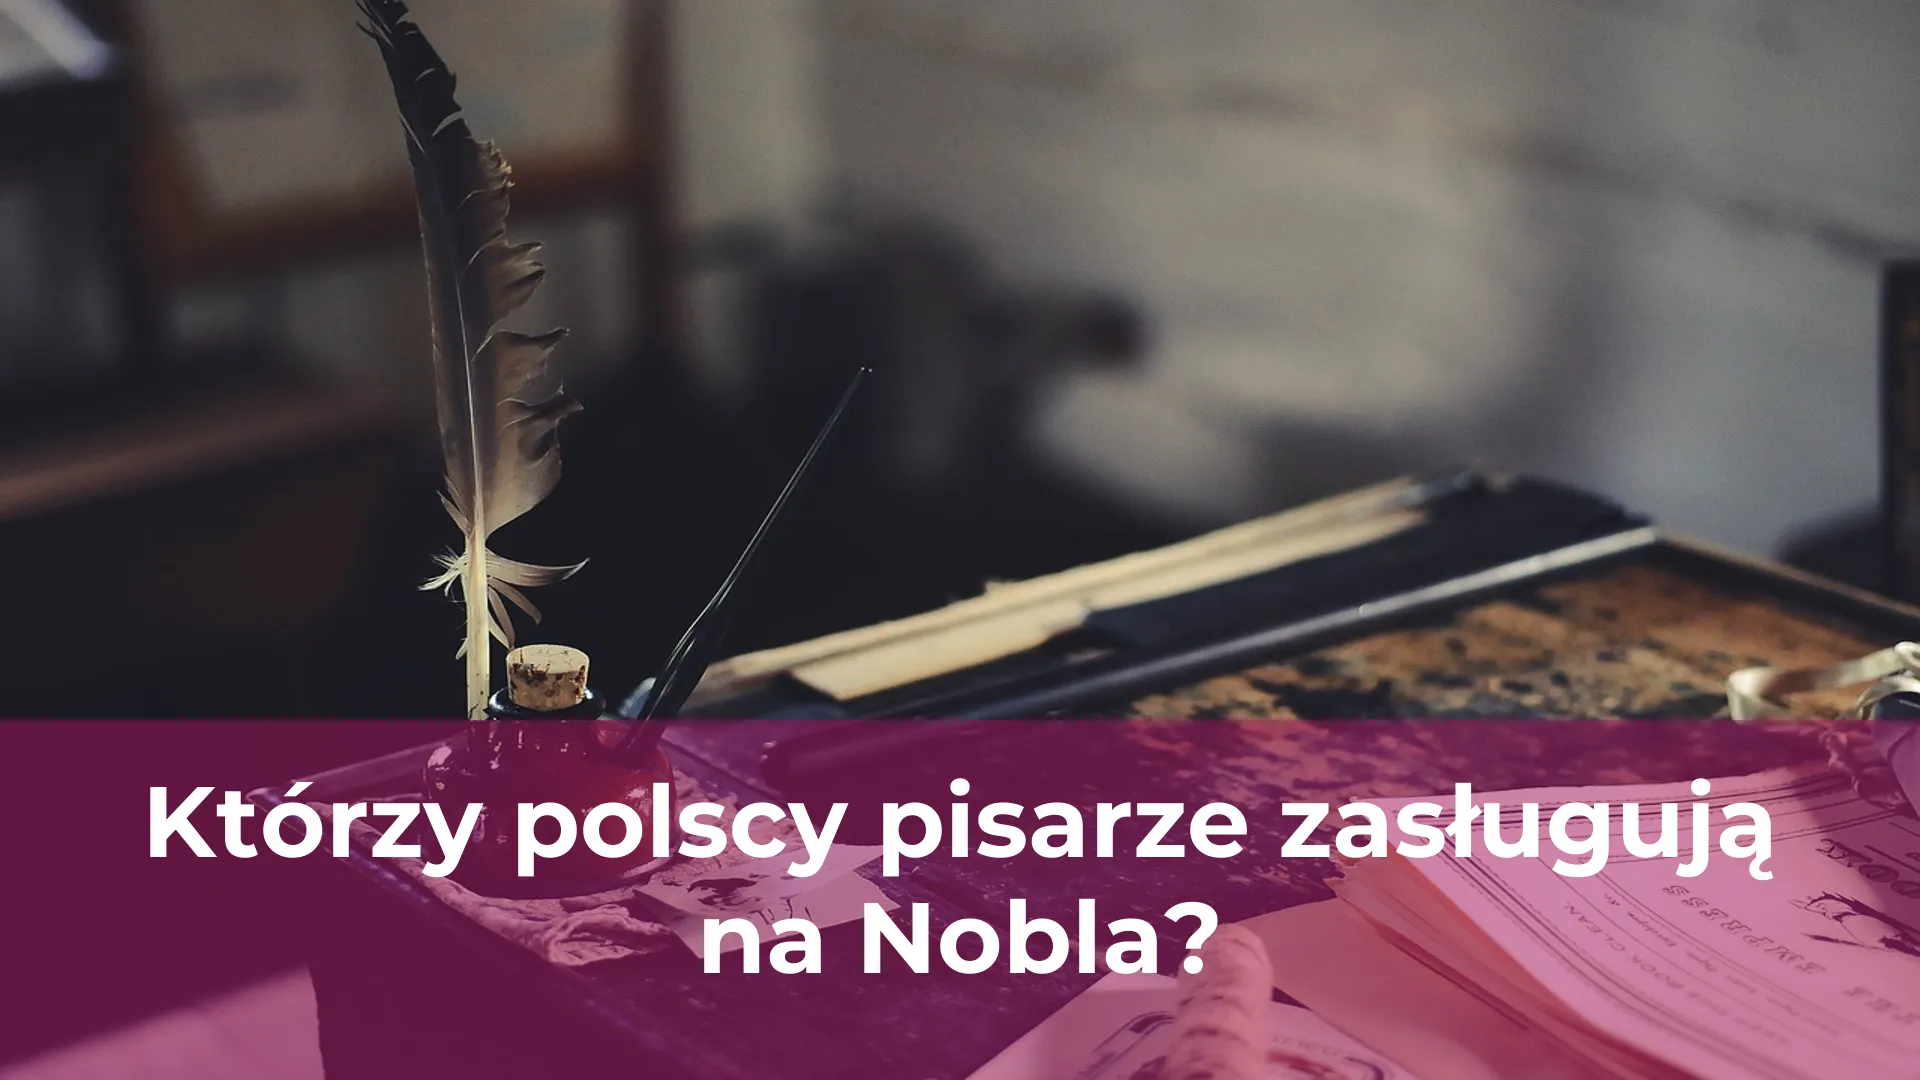 Którzy polscy pisarze zasługują na nobla